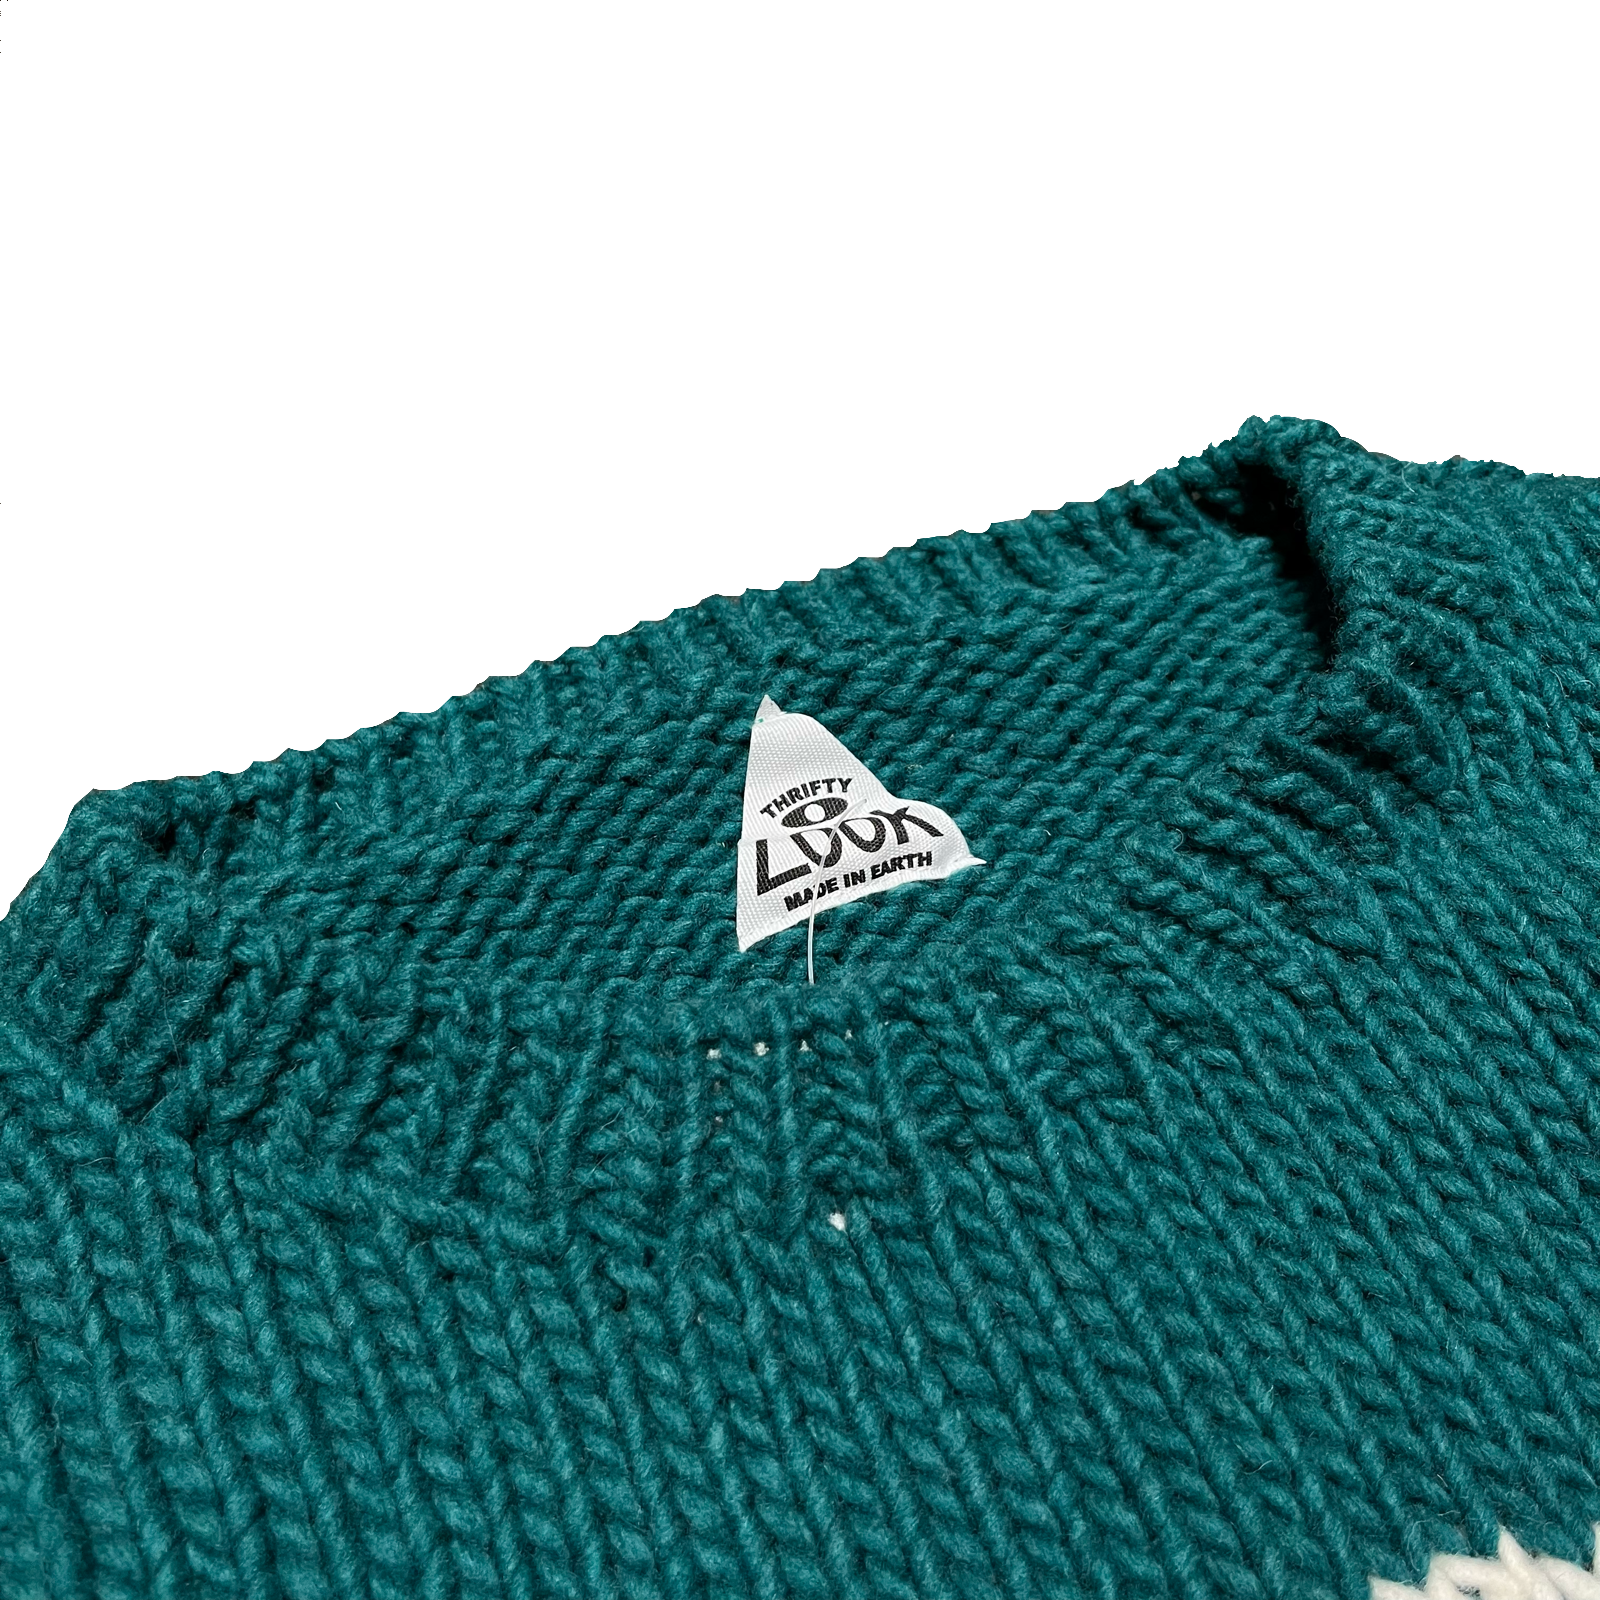 【新品】【UCLA】Peru knit U by SPICK&SPAN ニット